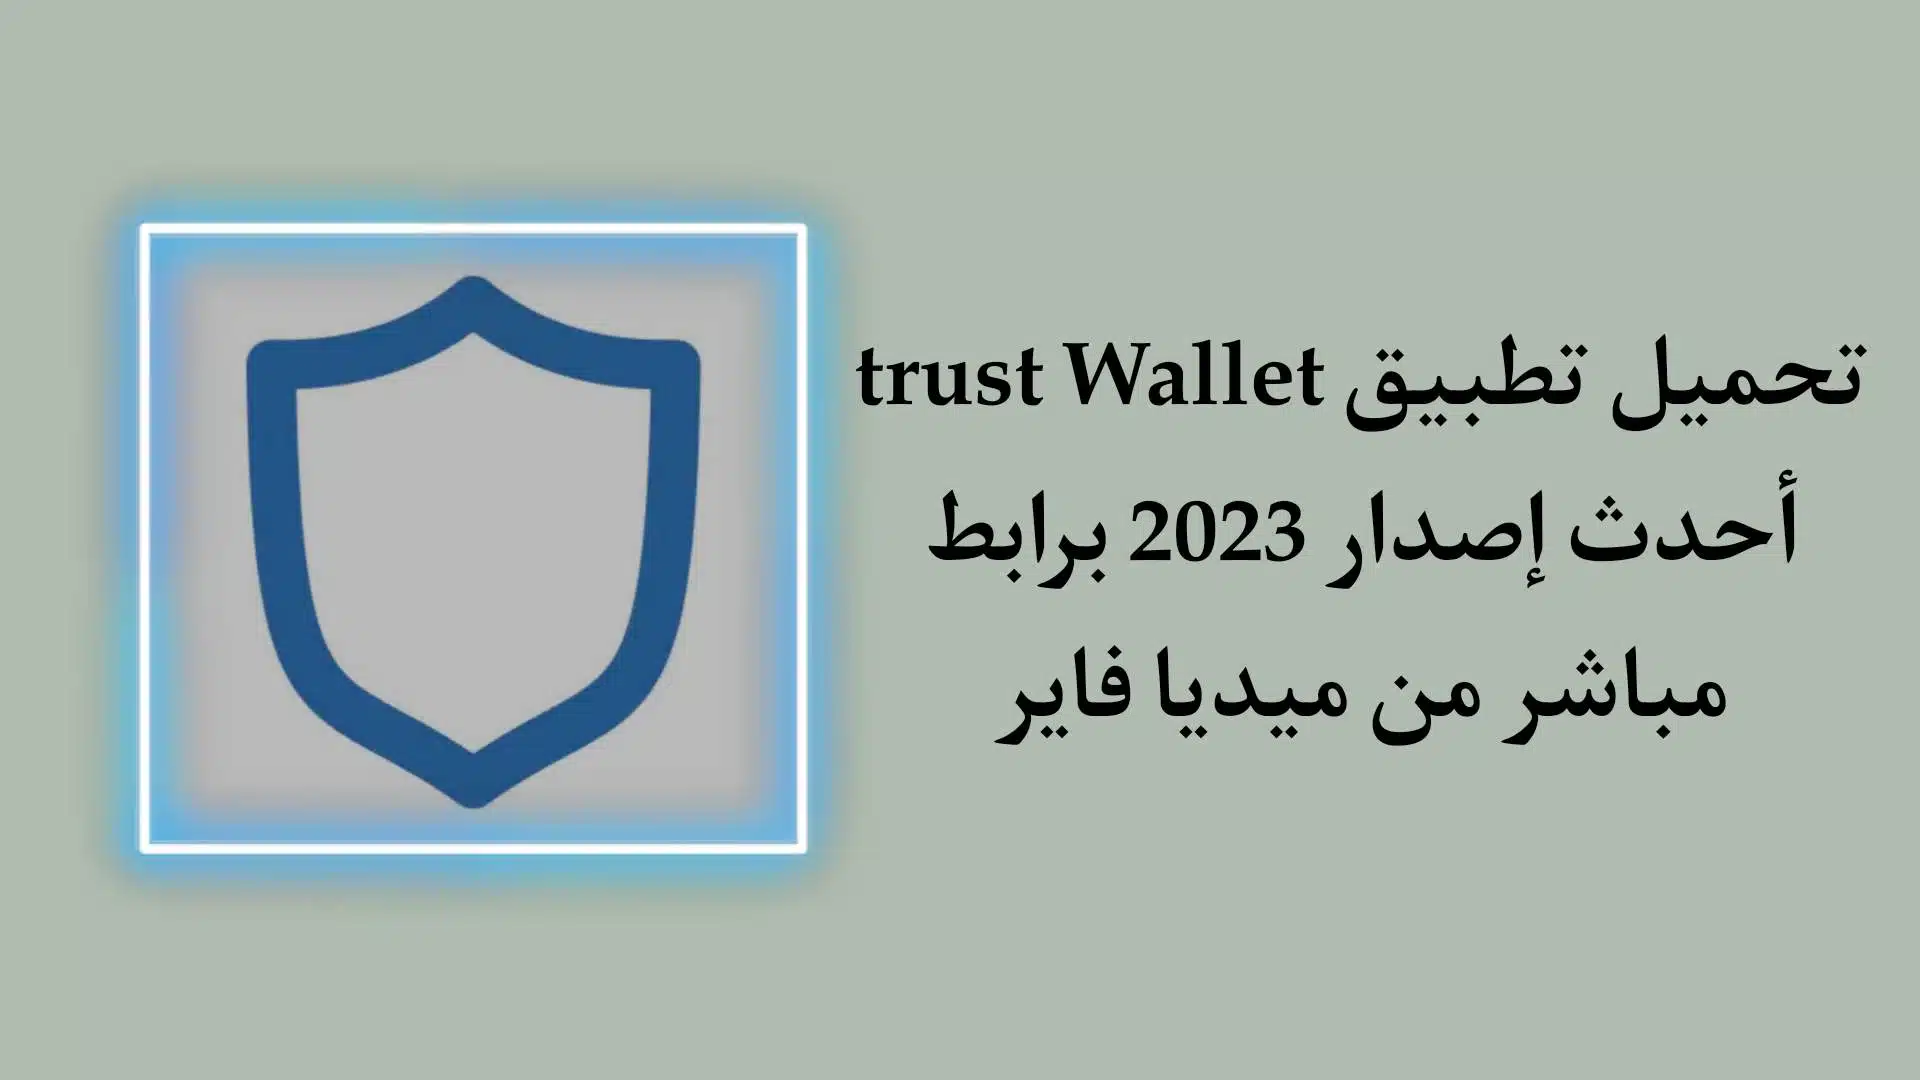 تحميل تطبيق Trust Wallet APK اخر اصدار 2023 للاندرويد